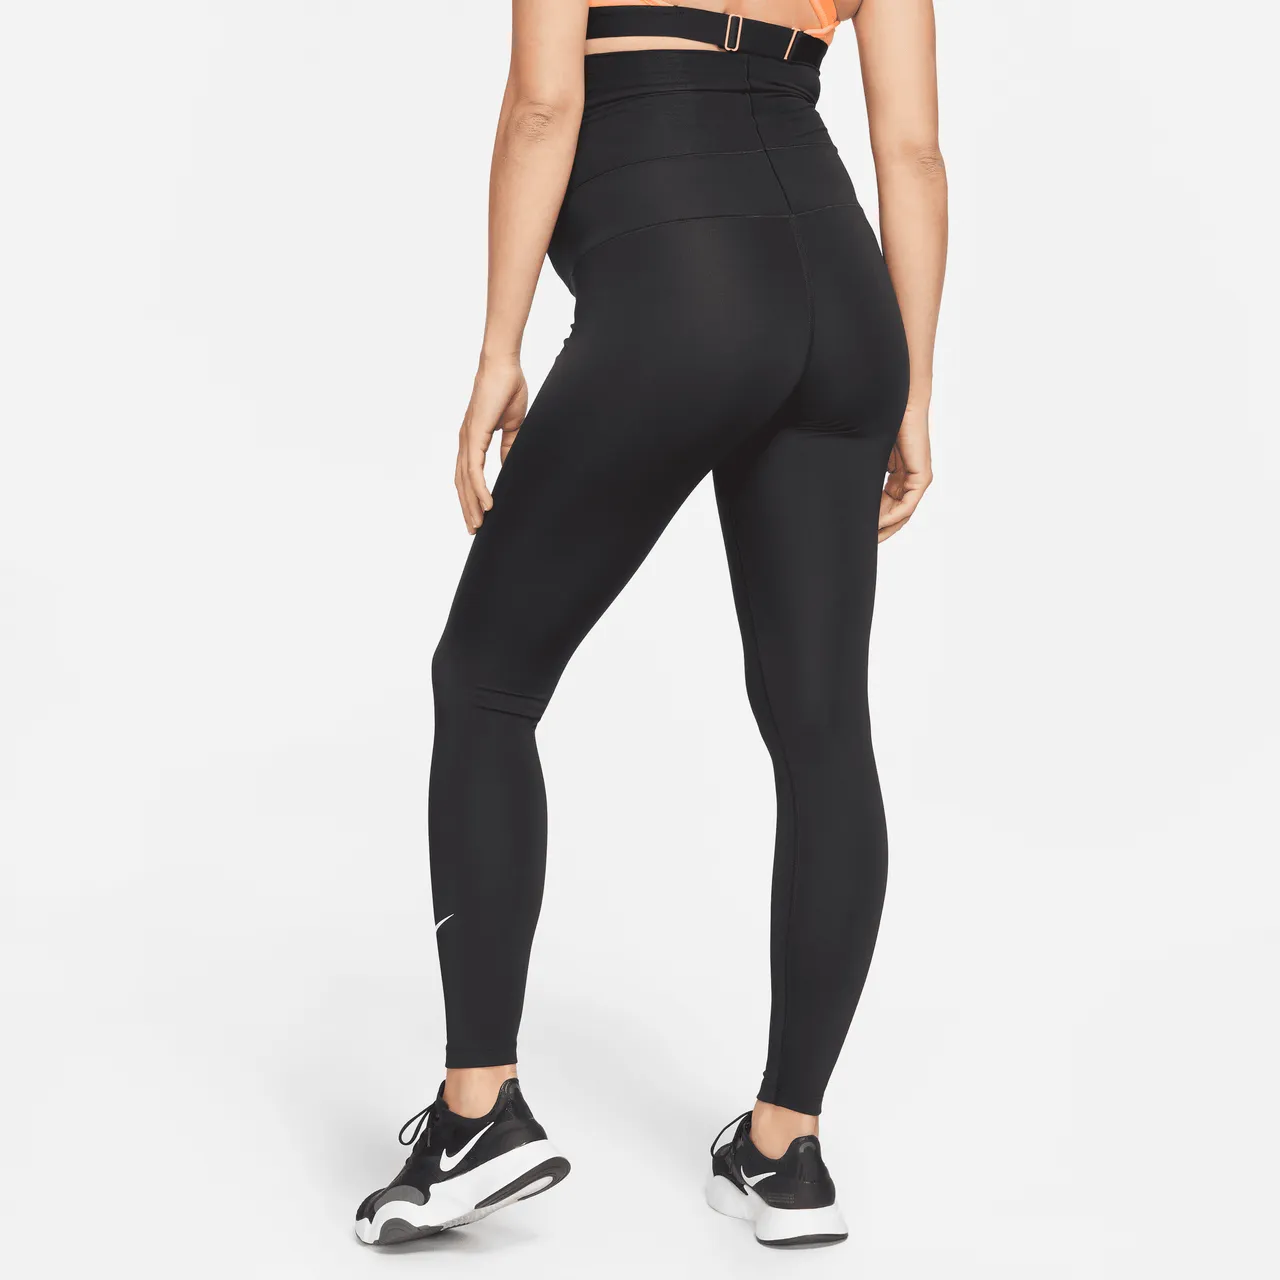 Nike One (M) Legging met hoge taille voor dames (positiekleding) - Zwart